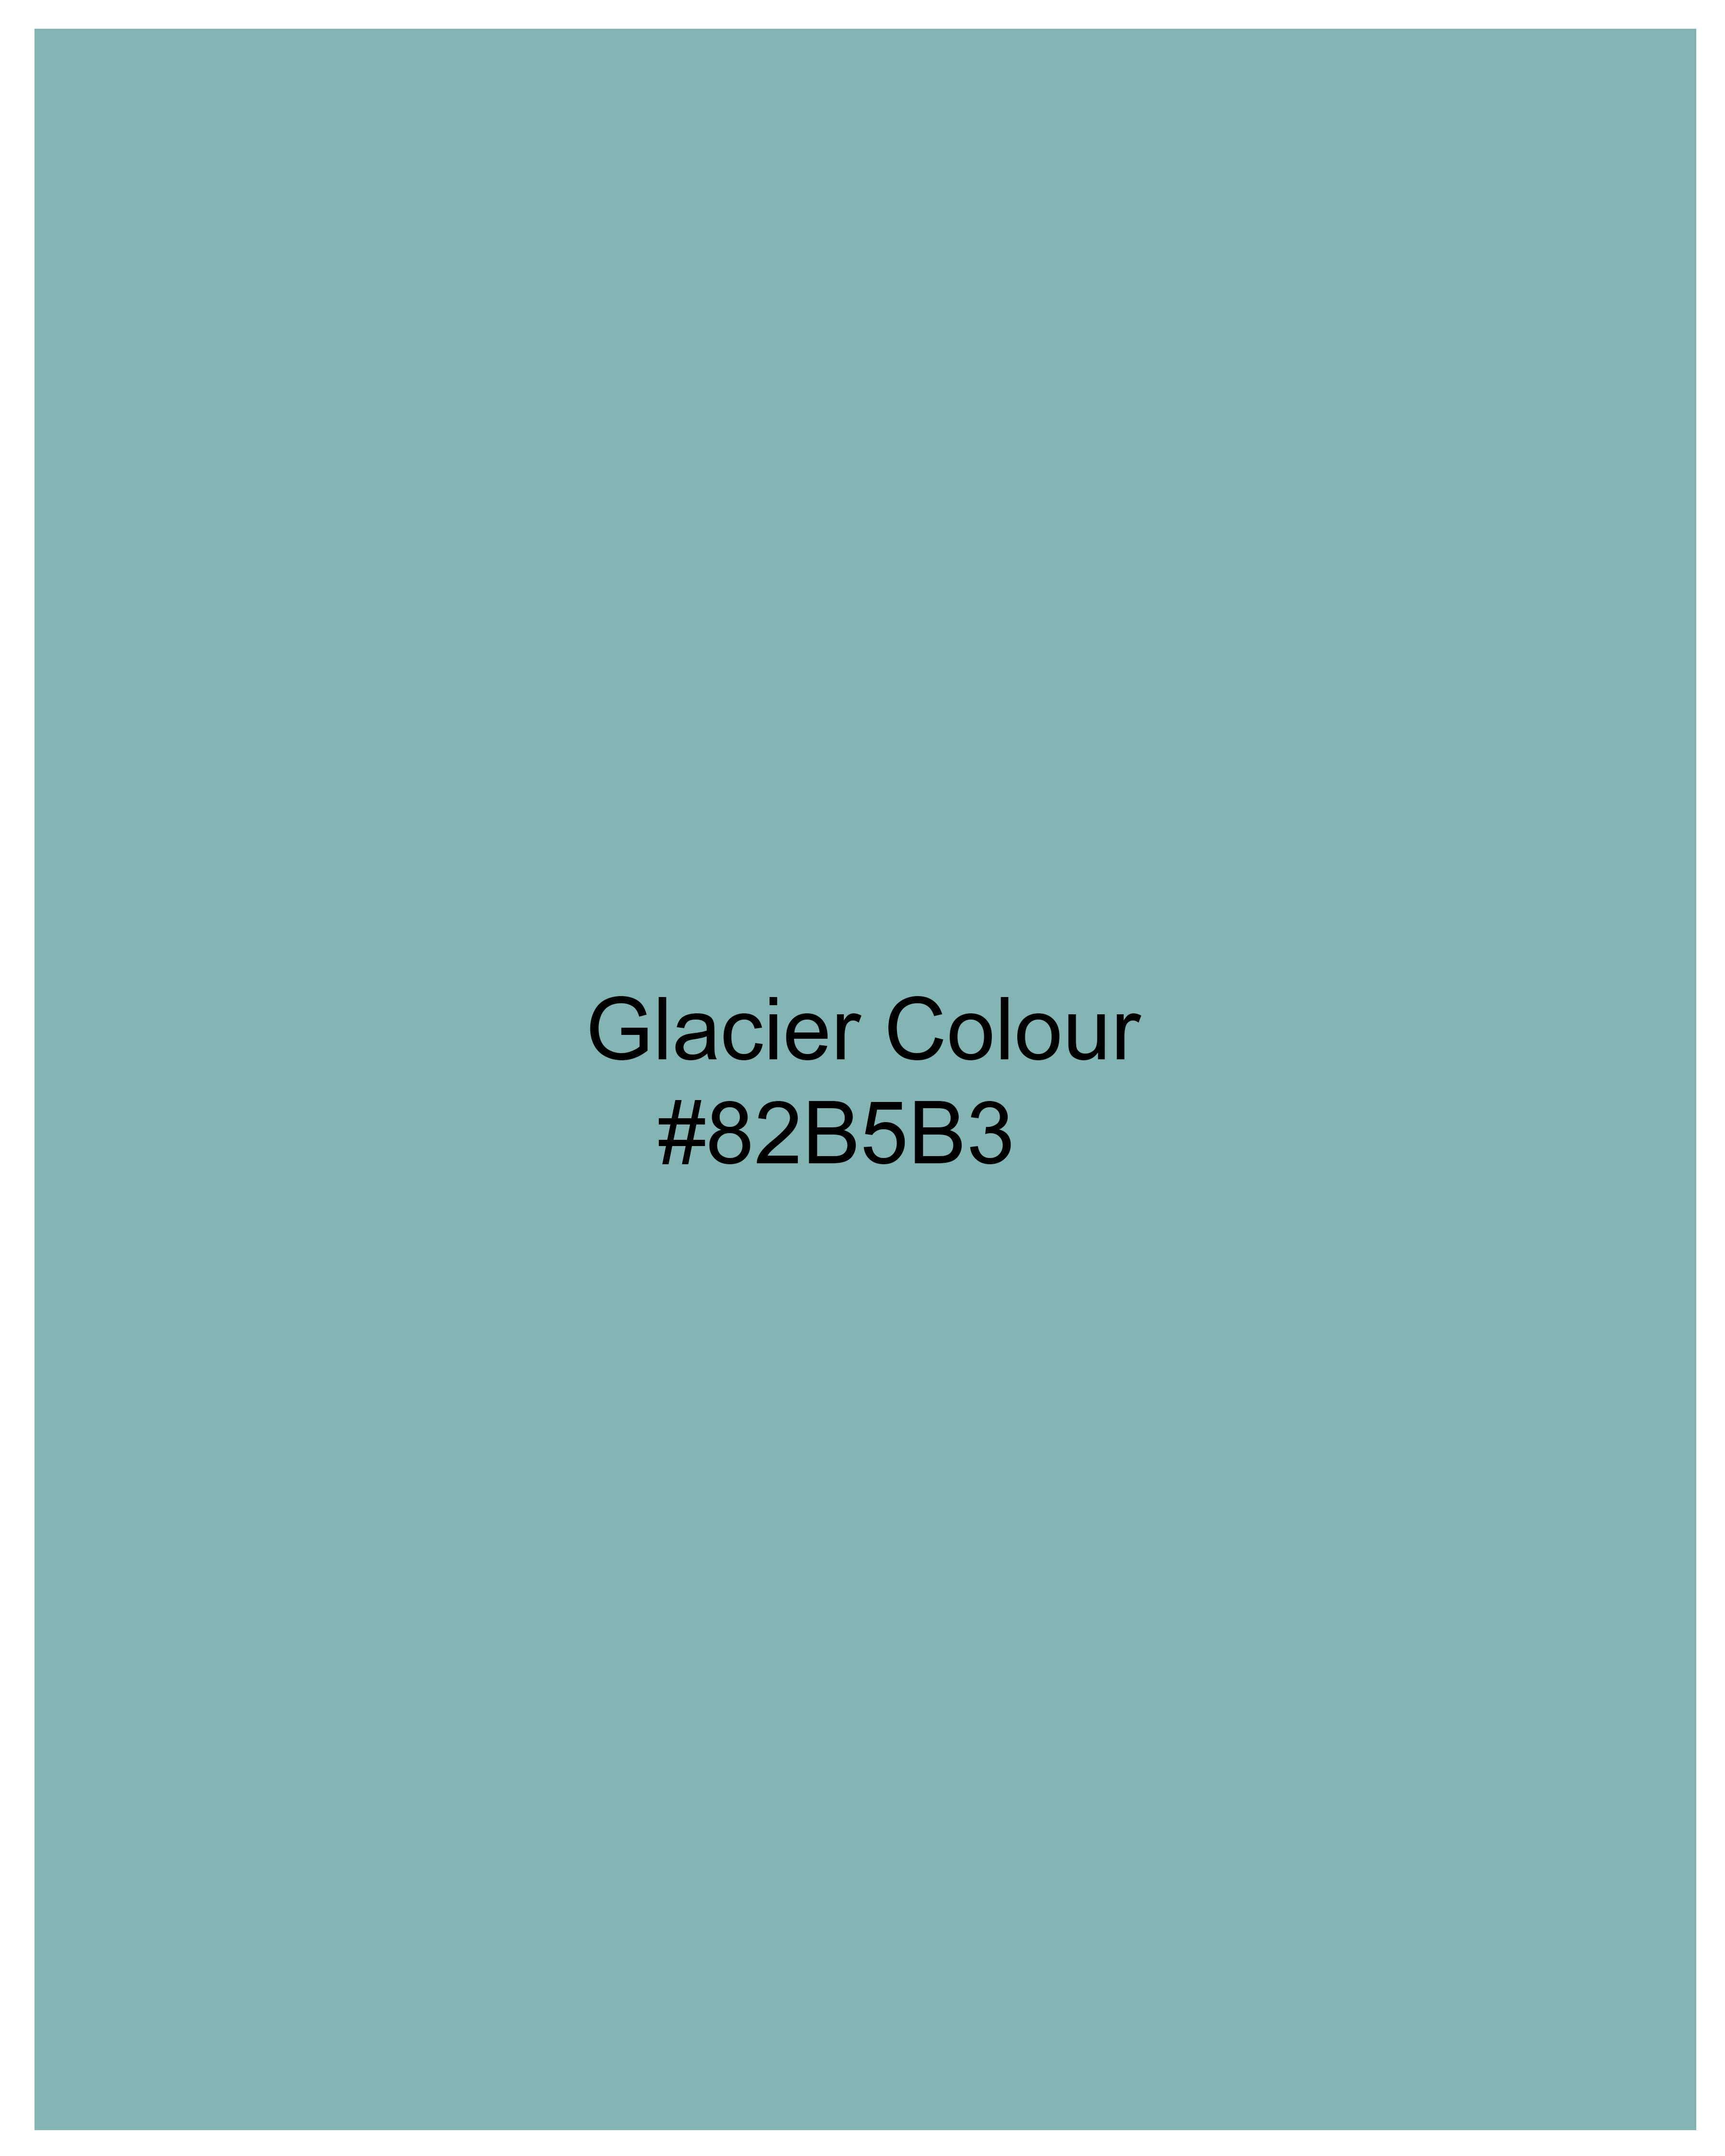 Glacier Blue Super Soft Premium Cotton Shirt  8825-BLK-38,8825-BLK-H-38,8825-BLK-39,8825-BLK-H-39,8825-BLK-40,8825-BLK-H-40,8825-BLK-42,8825-BLK-H-42,8825-BLK-44,8825-BLK-H-44,8825-BLK-46,8825-BLK-H-46,8825-BLK-48,8825-BLK-H-48,8825-BLK-50,8825-BLK-H-50,8825-BLK-52,8825-BLK-H-52